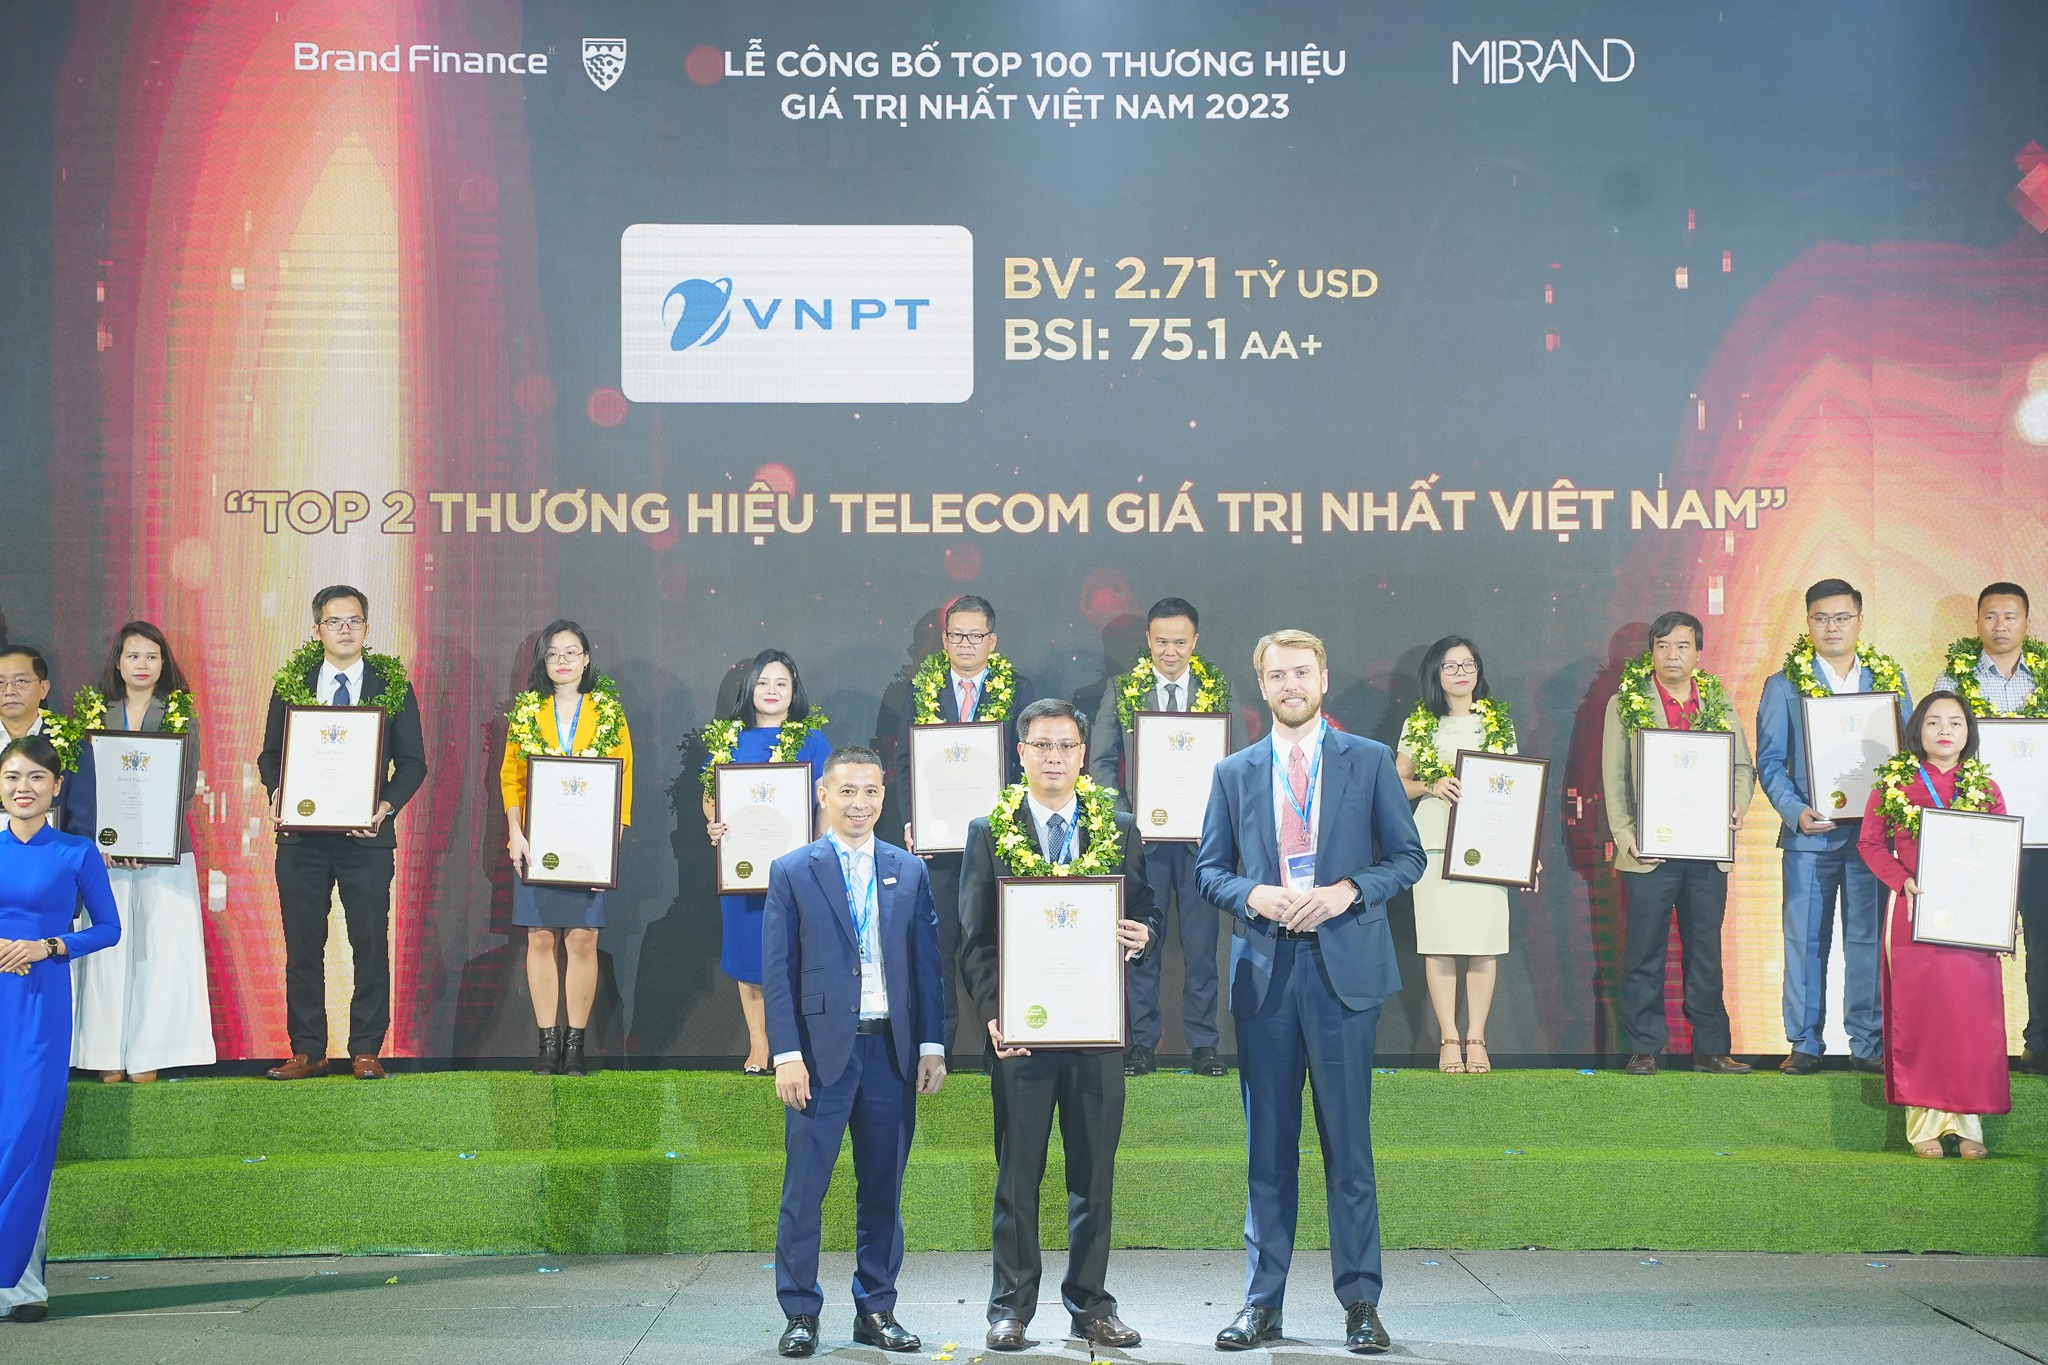 Brand Finance và Mibrand Việt Nam đã trao chứng nhận chính thức về giá trị thương hiệu, thứ hạng, chỉ số sức mạnh thương hiệu VNPT. Đây là sự ghi nhận xứng đáng cho các thành tựu của thương hiệu VNPT đạt được trong năm qua.